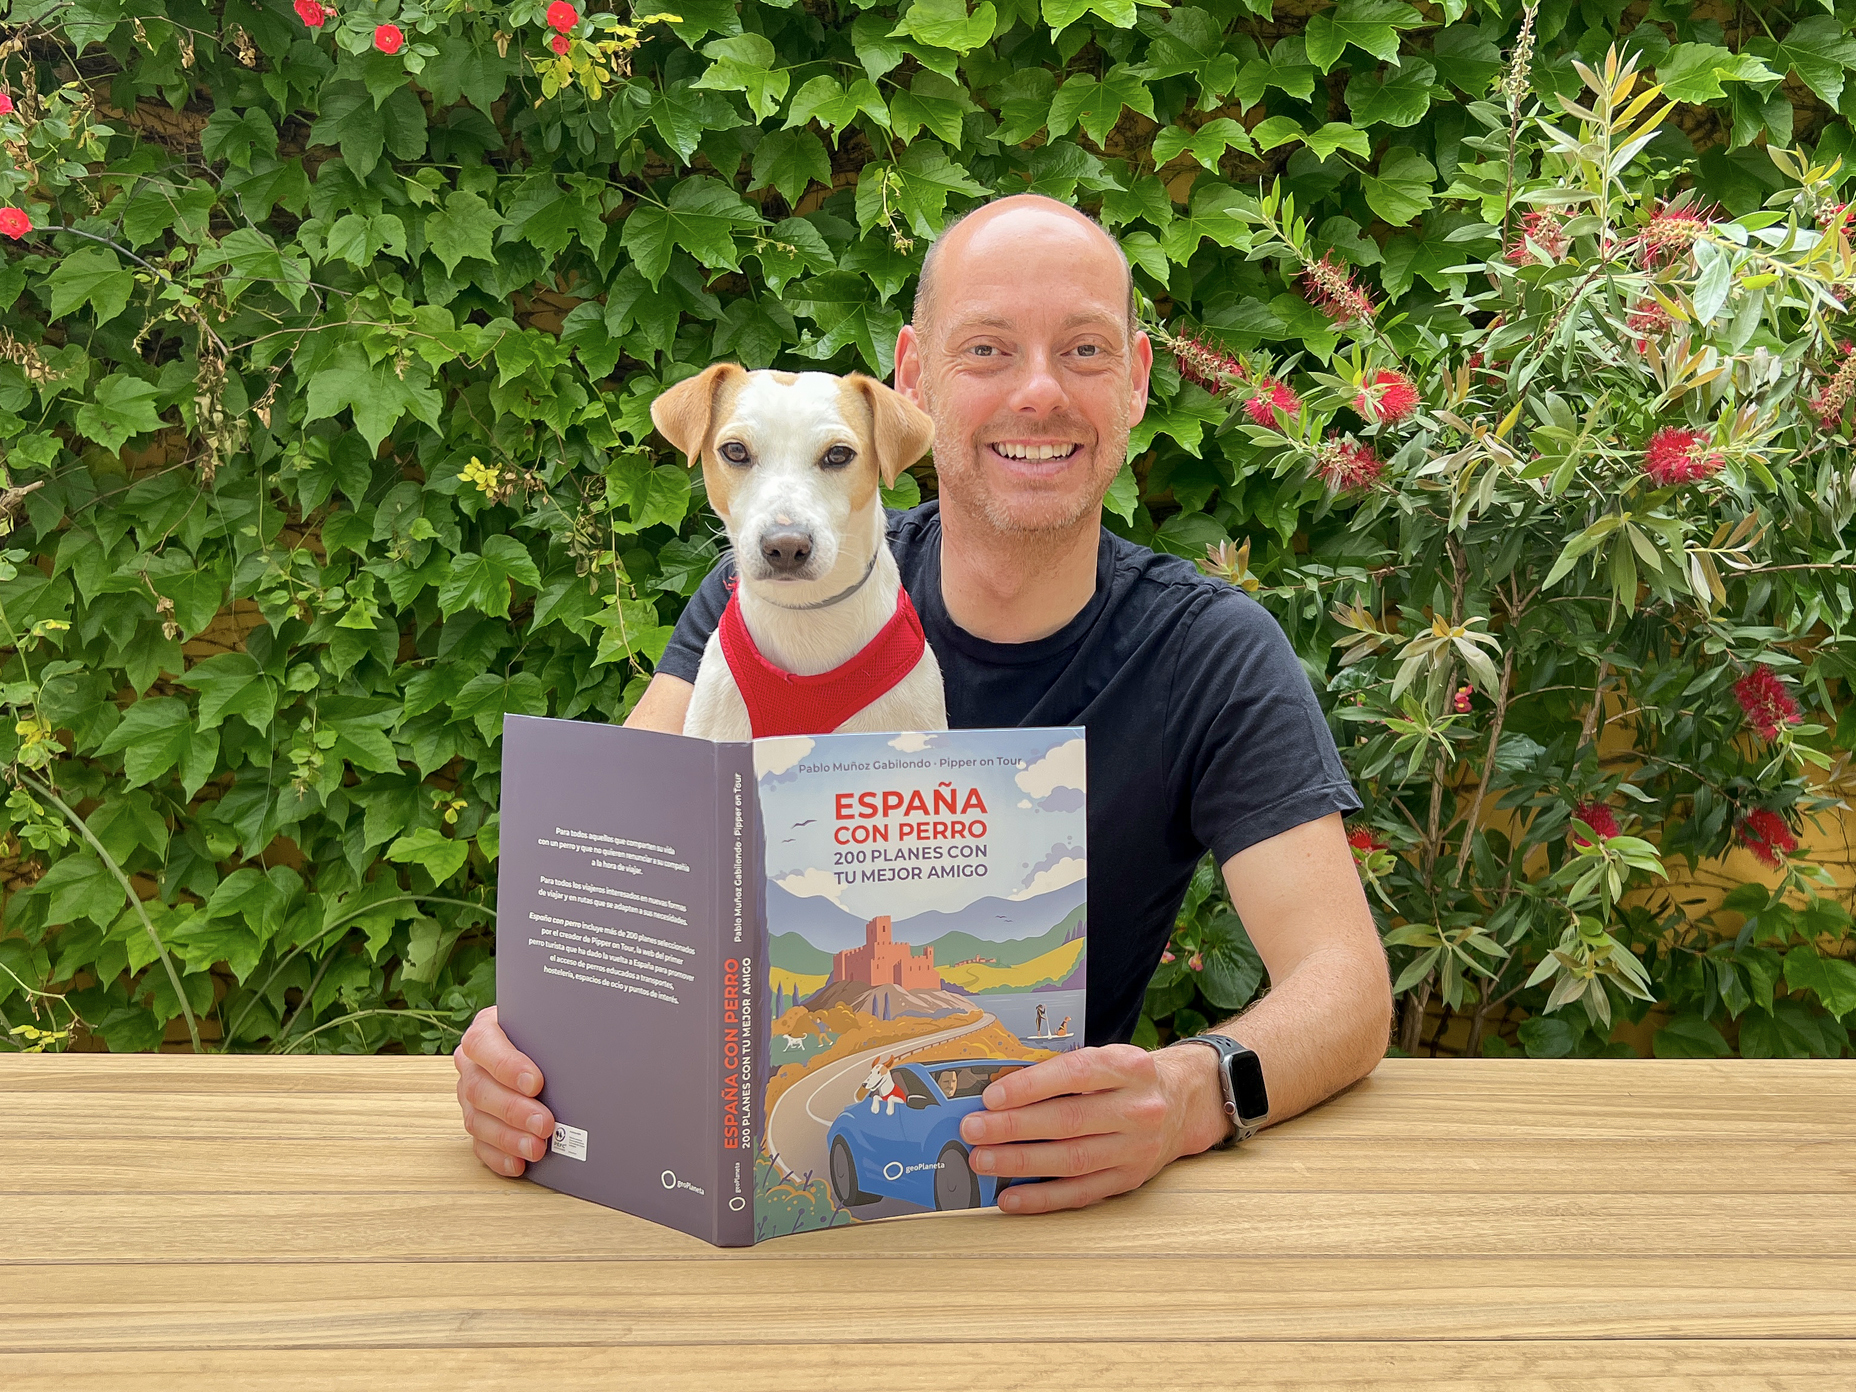 Read entire post: Pipper, el perro influencer, lanza su nuevo libro ‘España con perro’